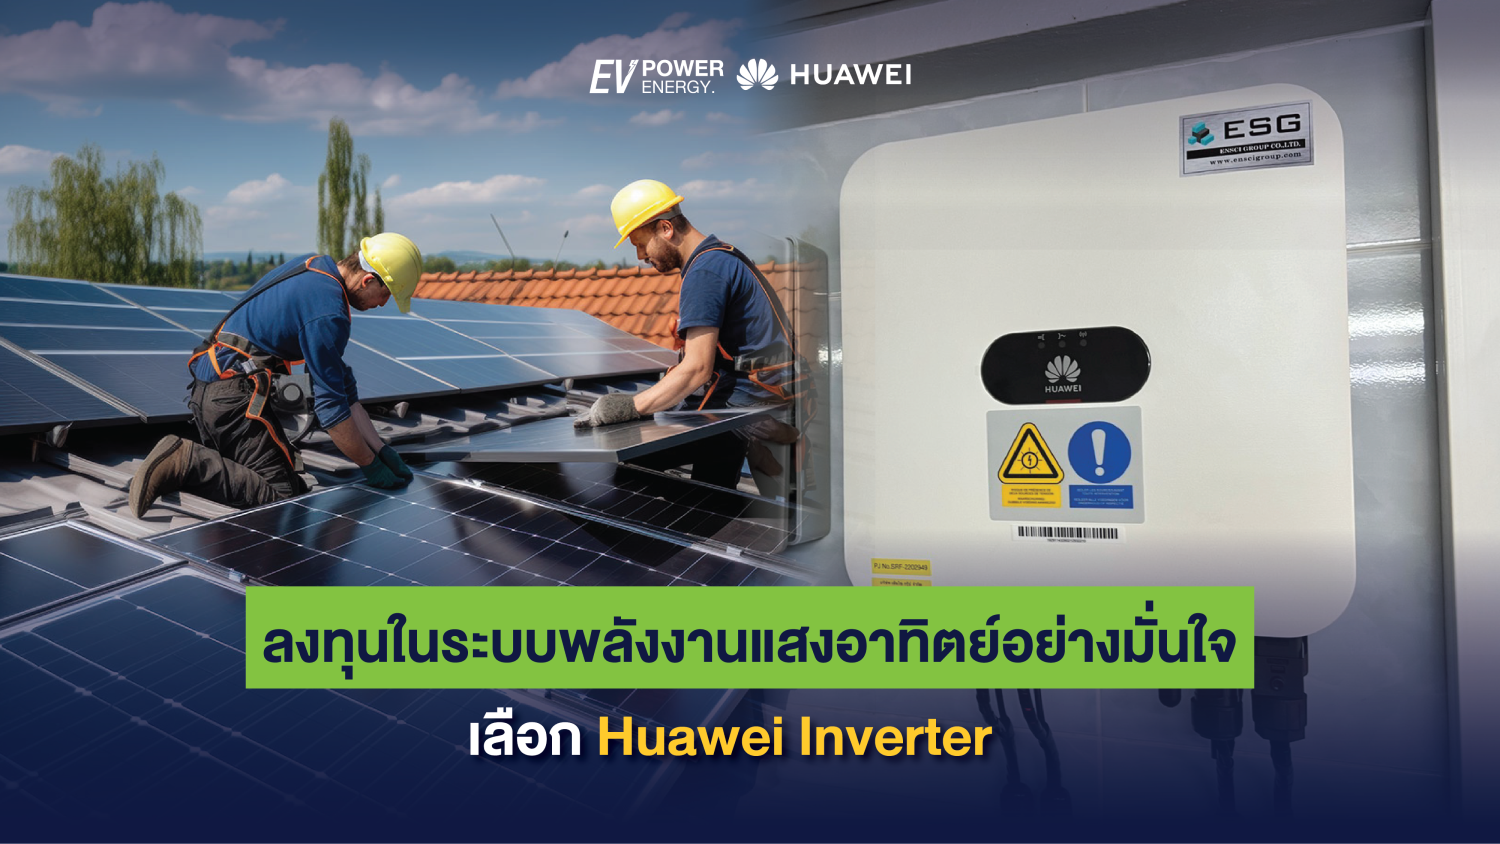 ลงทุนในระบบพลังงานแสงอาทิตย์อย่างมั่นใจ เลือก Huawei Inverter 1